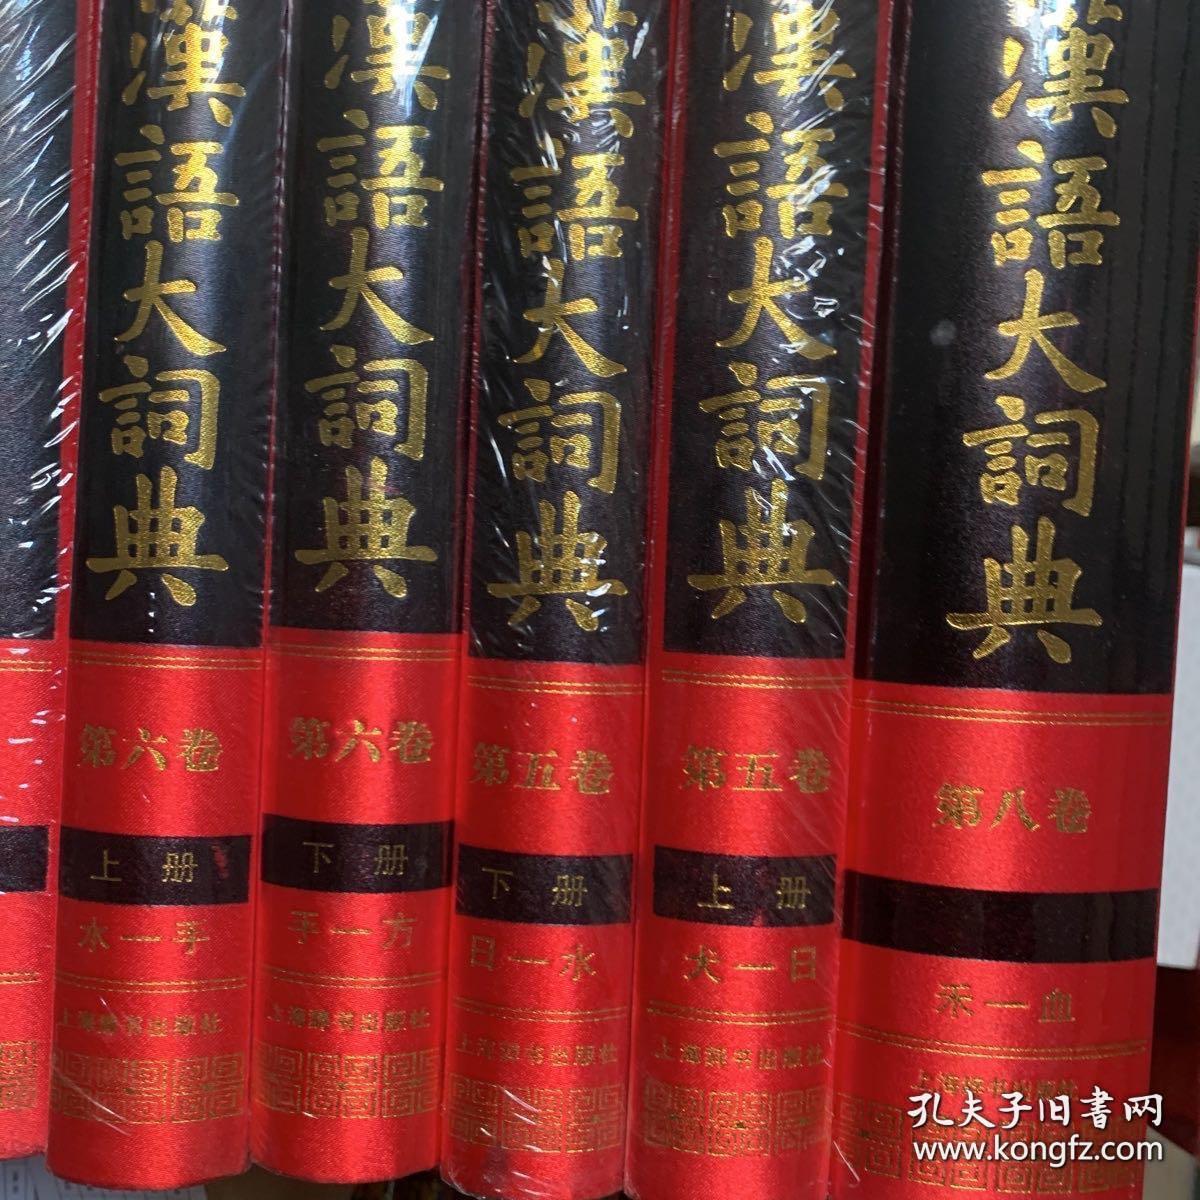 《汉语大词典》十册【第二卷（上、下）、第三卷（上、下）、第四卷、第五卷（上、下）、第六卷（上、下）、第八卷】 布面精装 塑封未开 品好